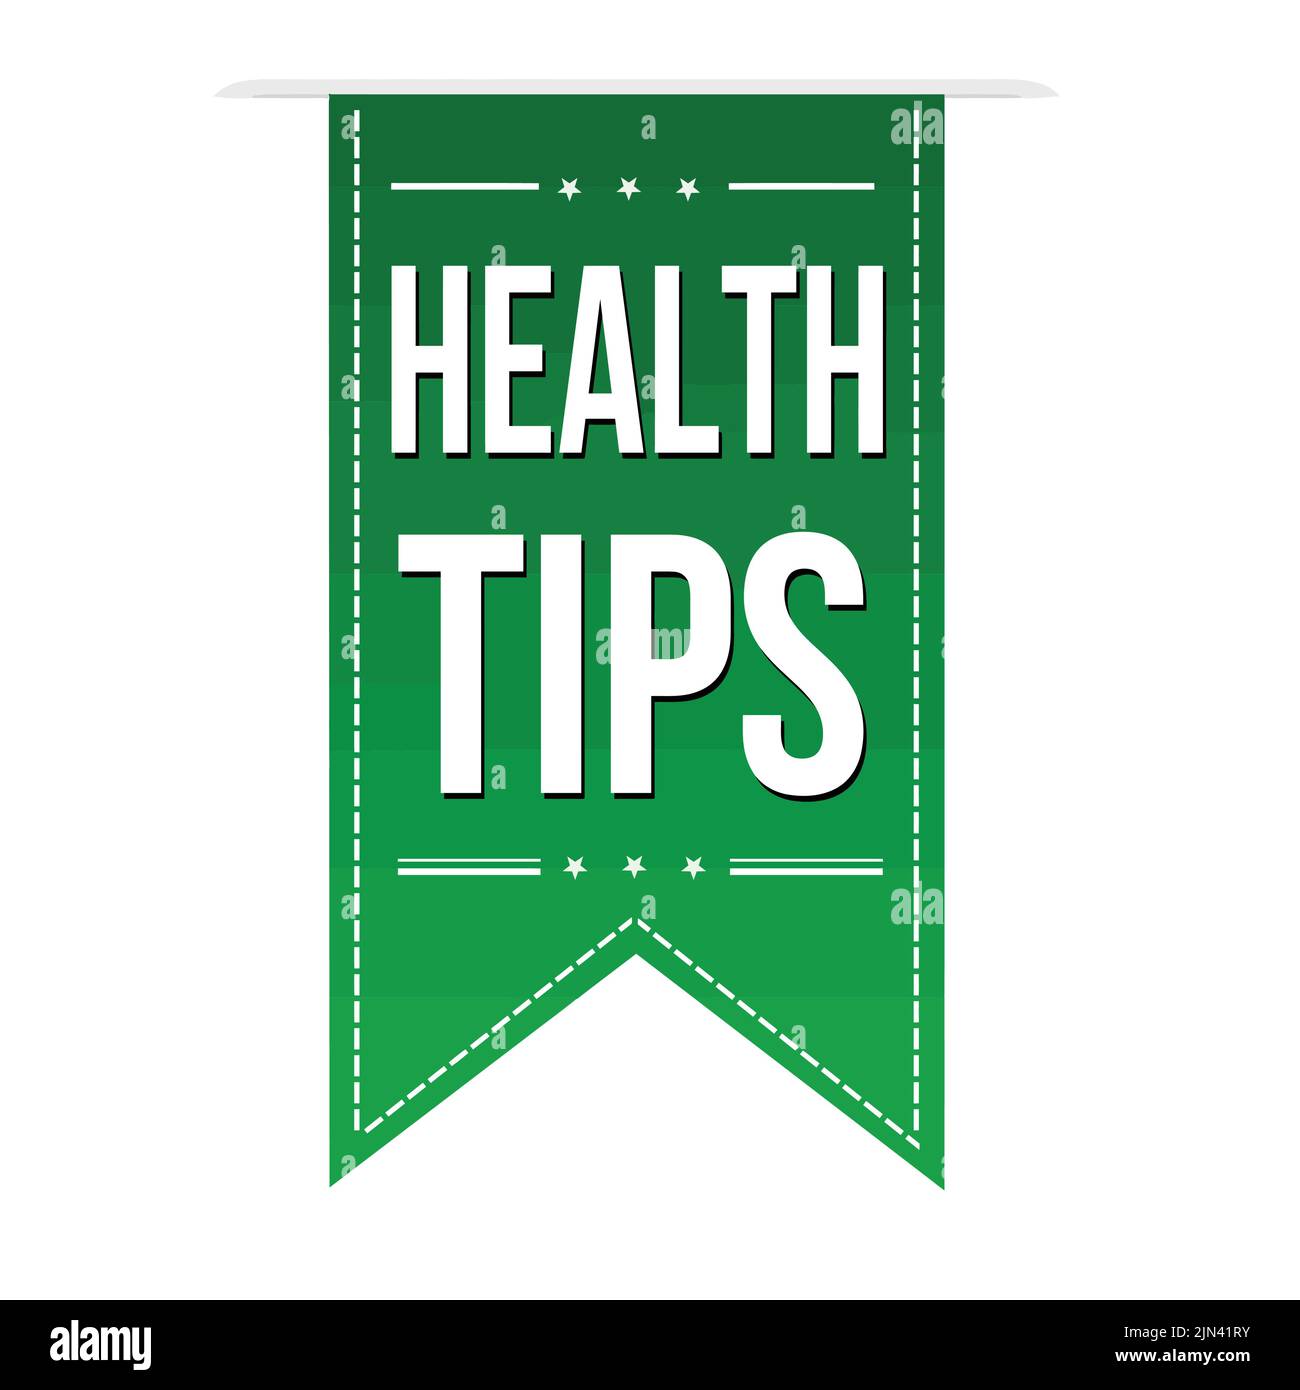 Health tips green ribbon or banner design on white background, vector illustration Stock Vector